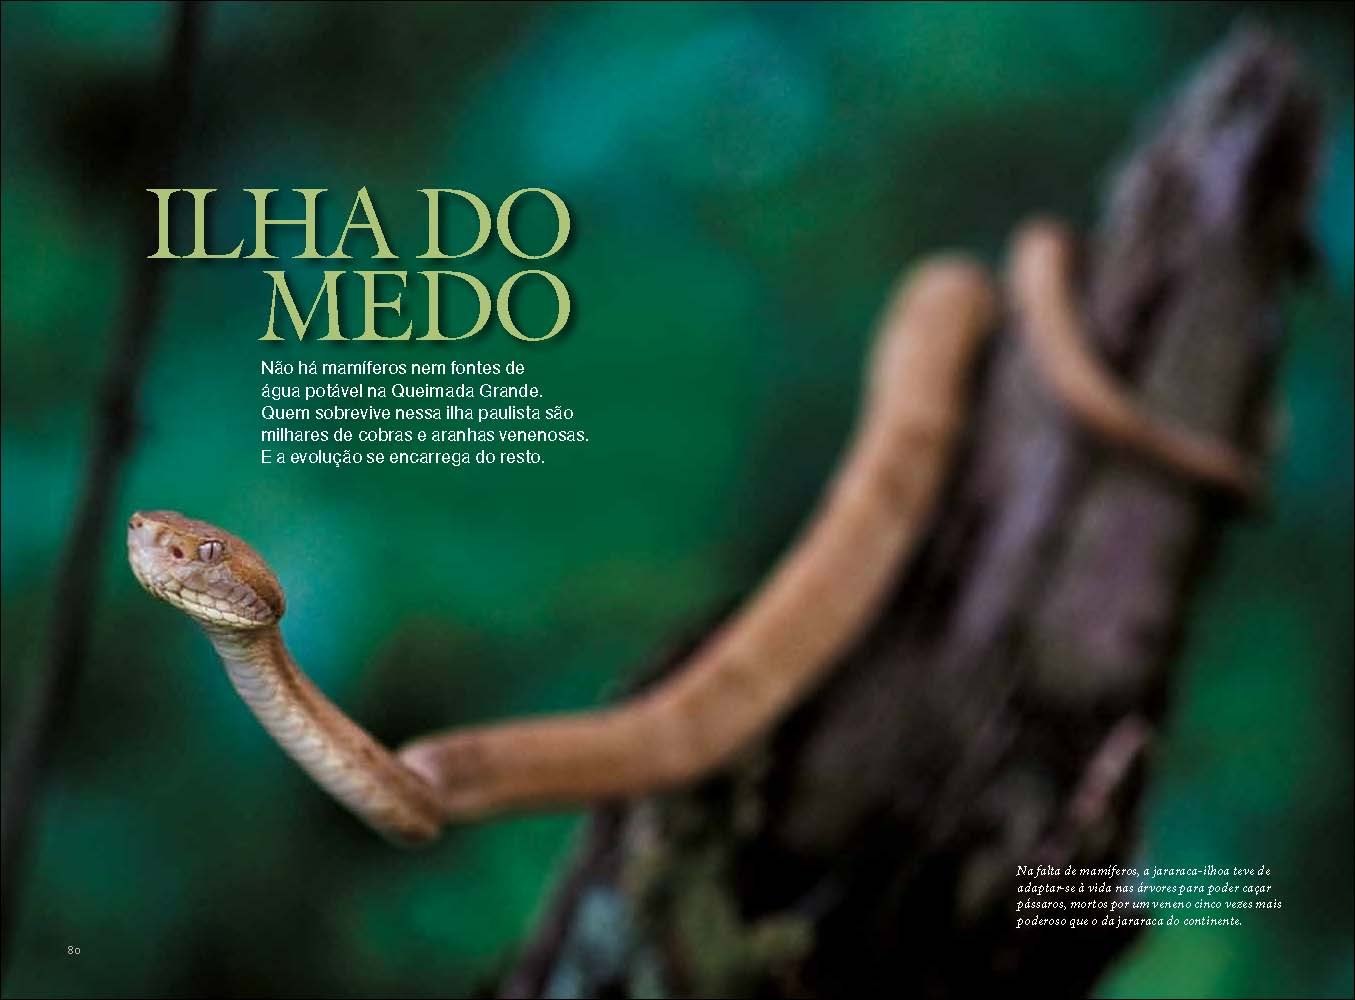 Остров змей фото. Остров Кеймада-Гранди Бразилия. Кеймада-Гранди змеиный остров. Змеиный остров (Snake Island), Бразилия.